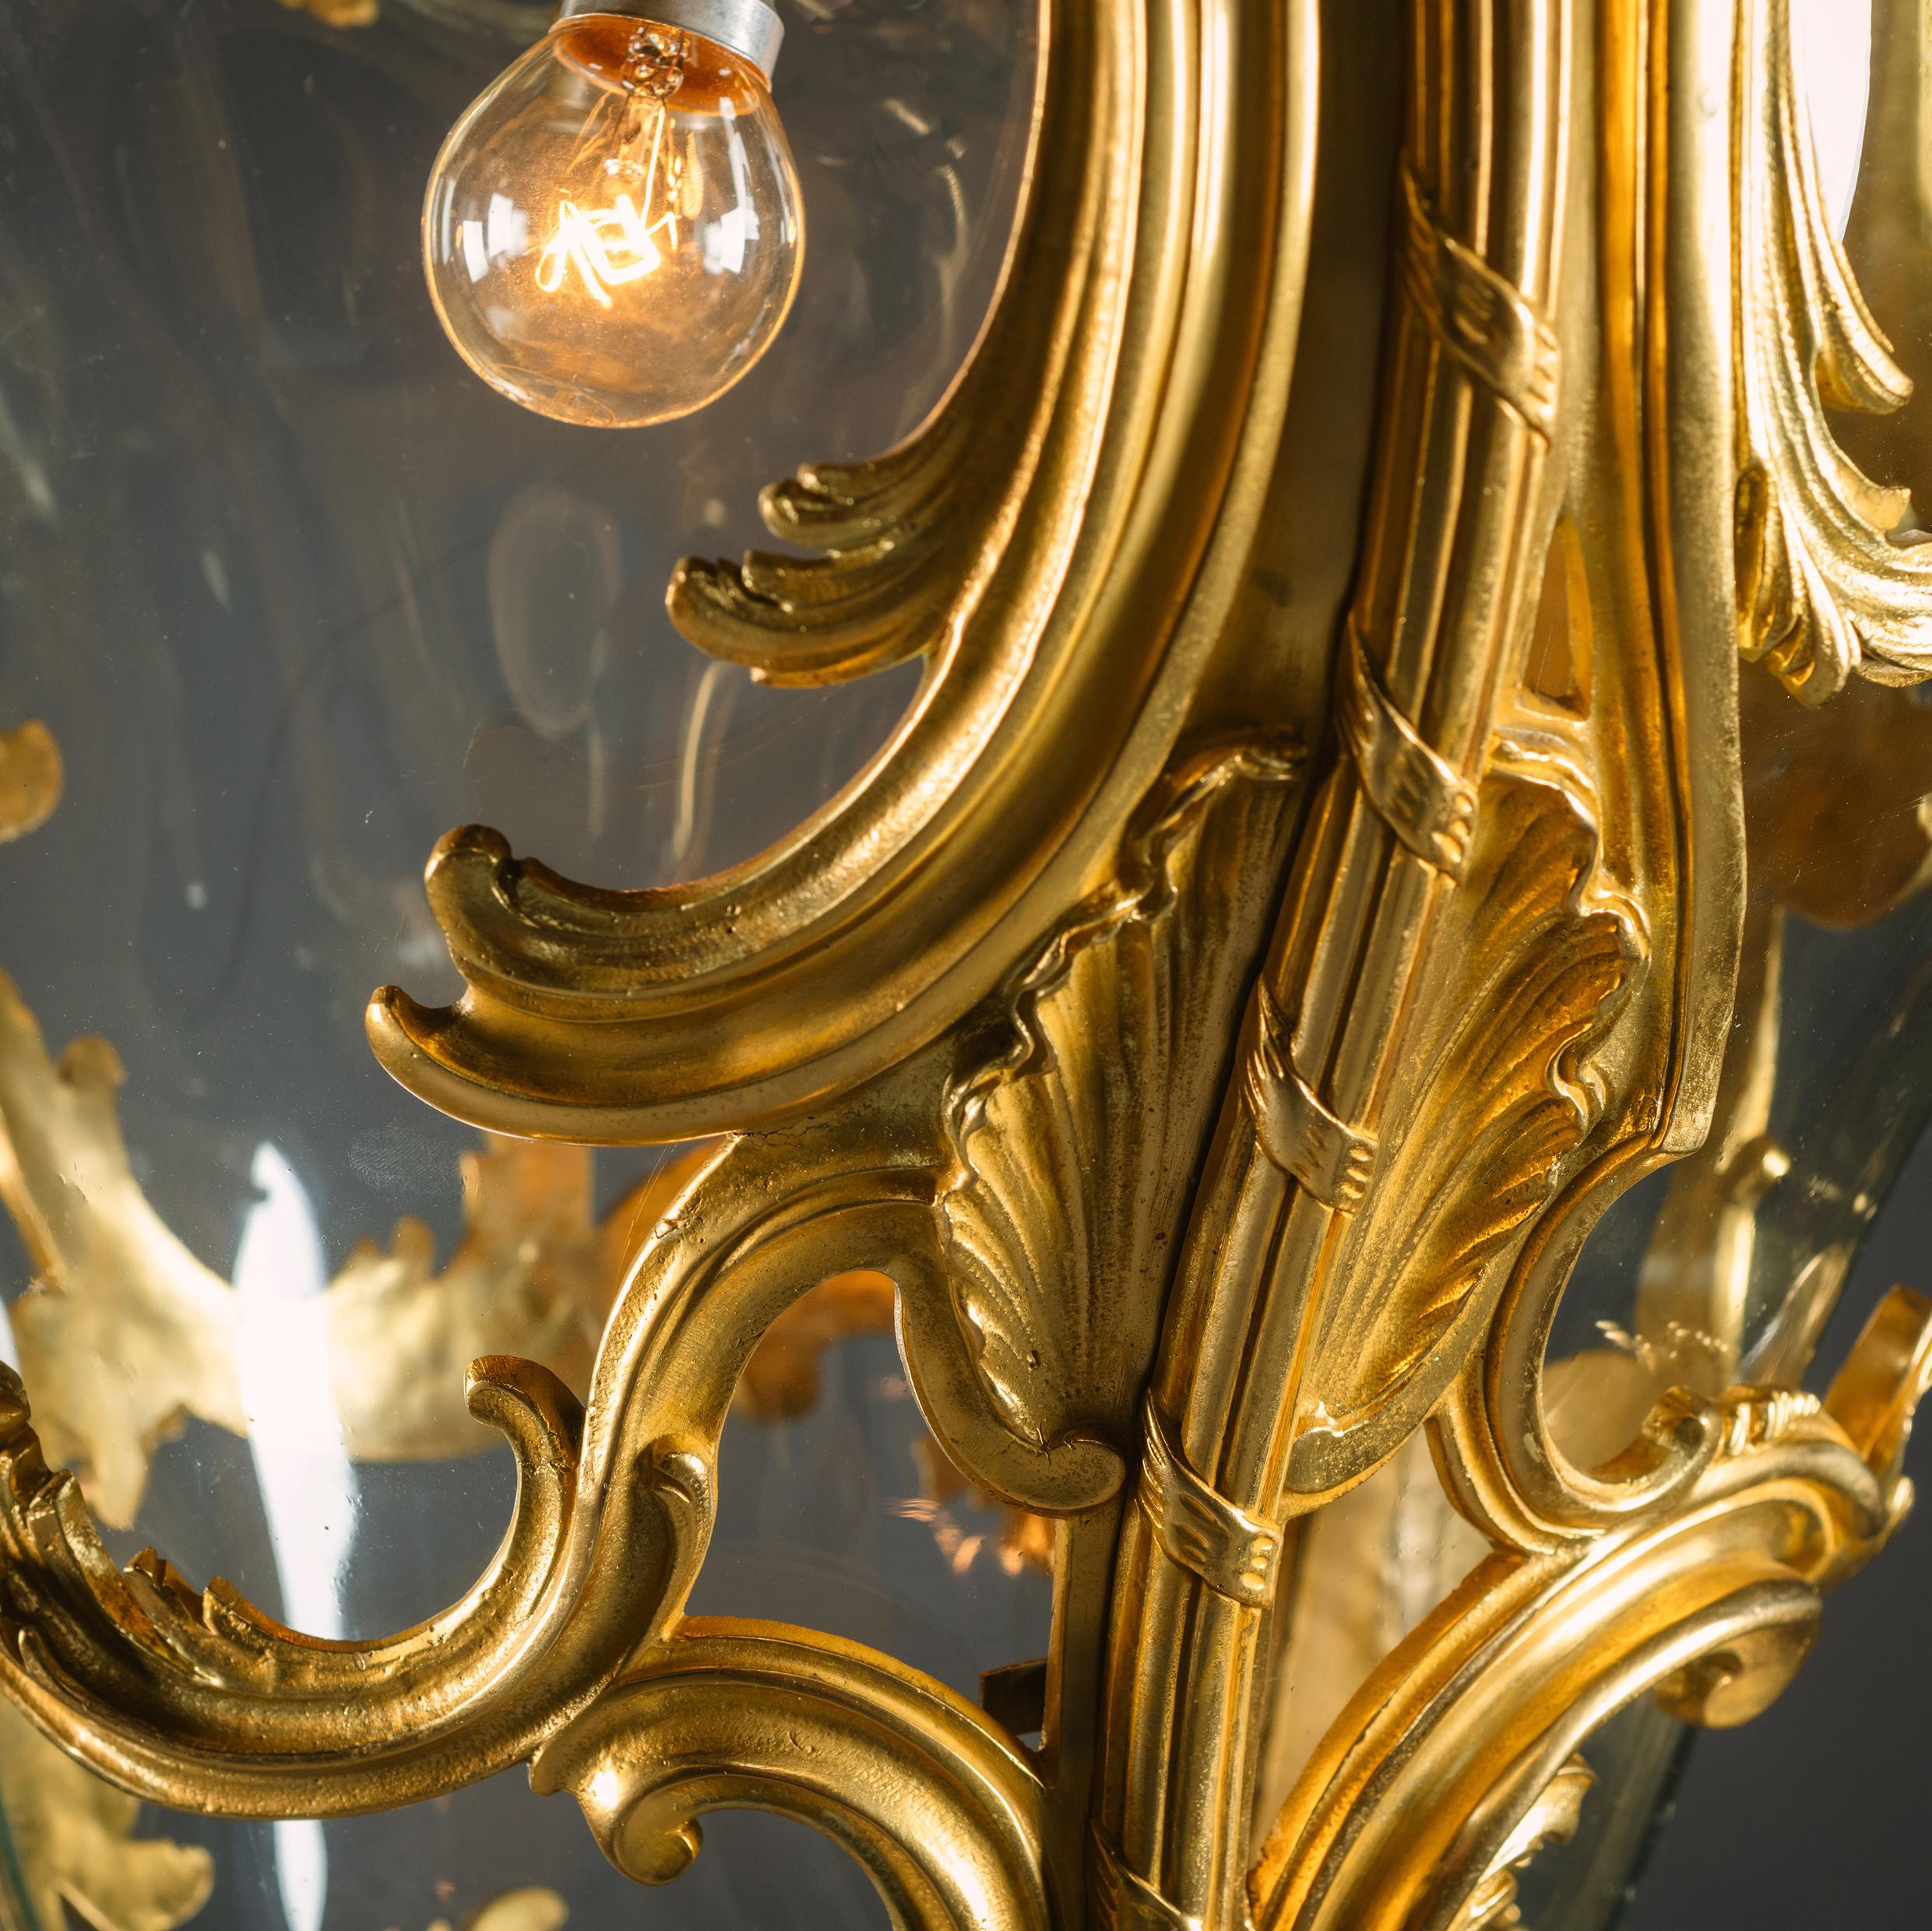 Grande lanterne de salle de style rococo en bronze doré.

De taille imposante, cette lanterne palatiale est finement moulée en bronze doré. Il est somptueusement modelé avec des volutes asymétriques en C, des feuilles d'acanthe balayées et des